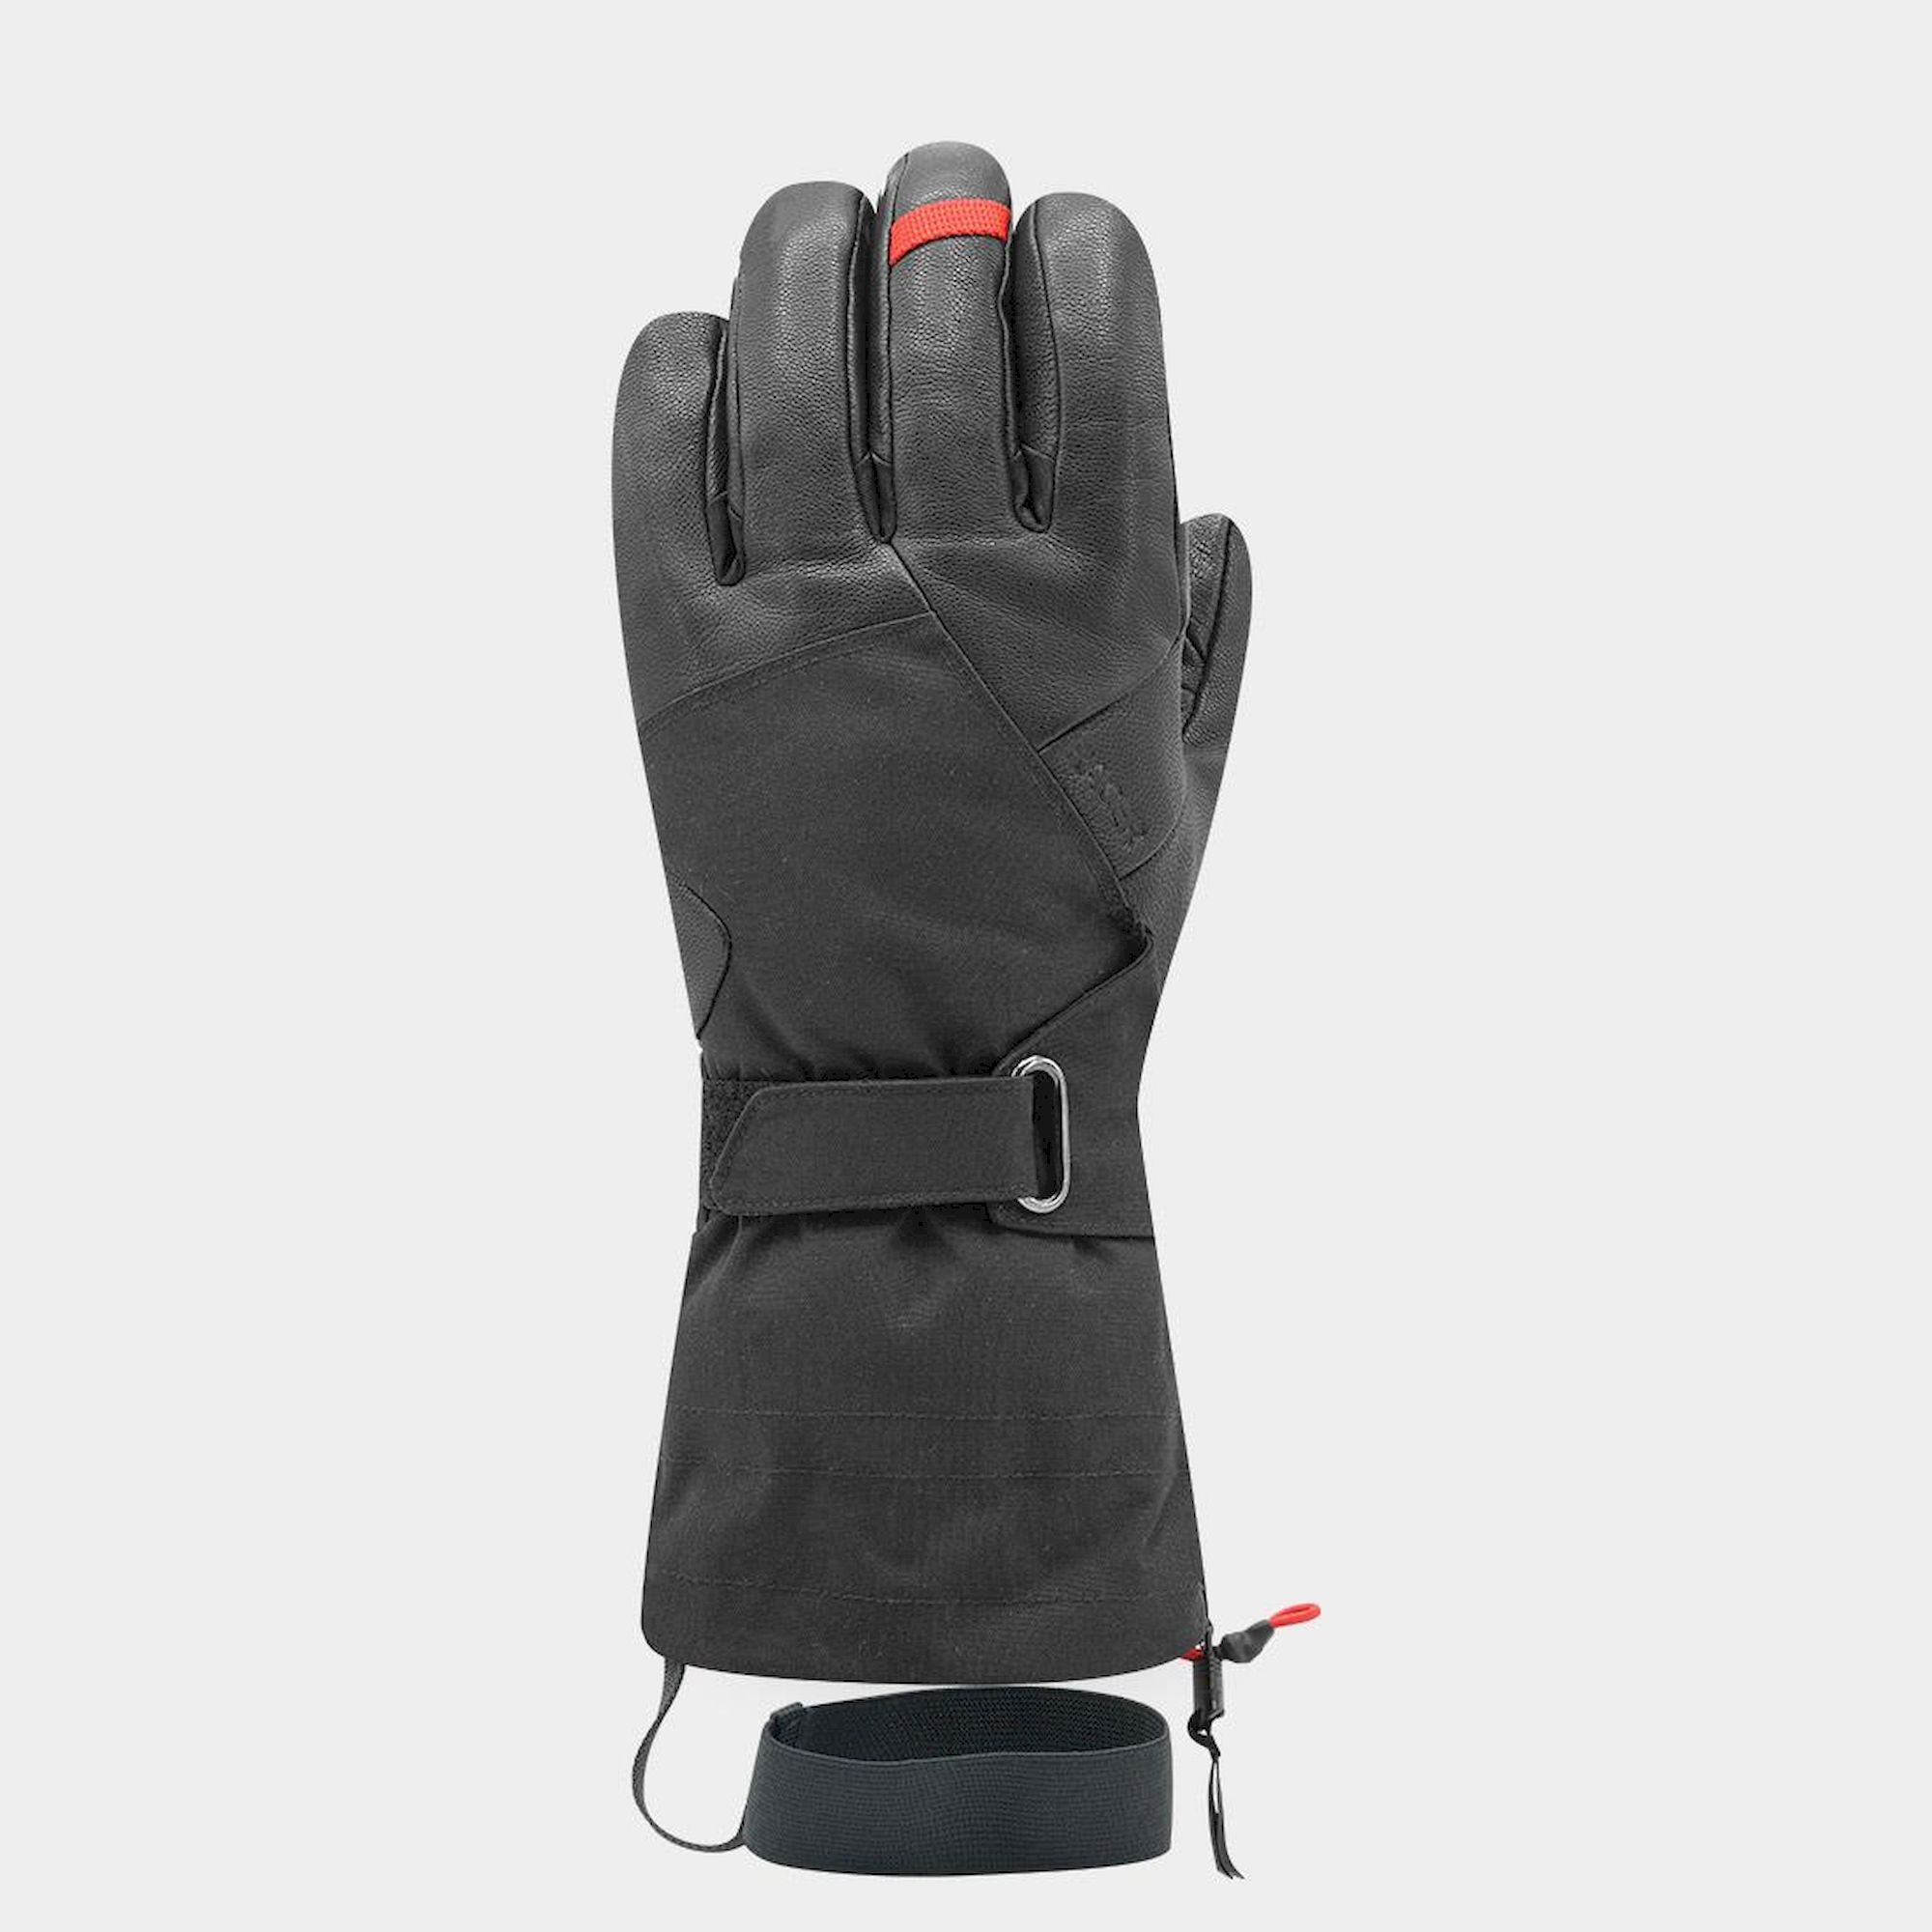 Racer Ltk4 Gloves Black L Man